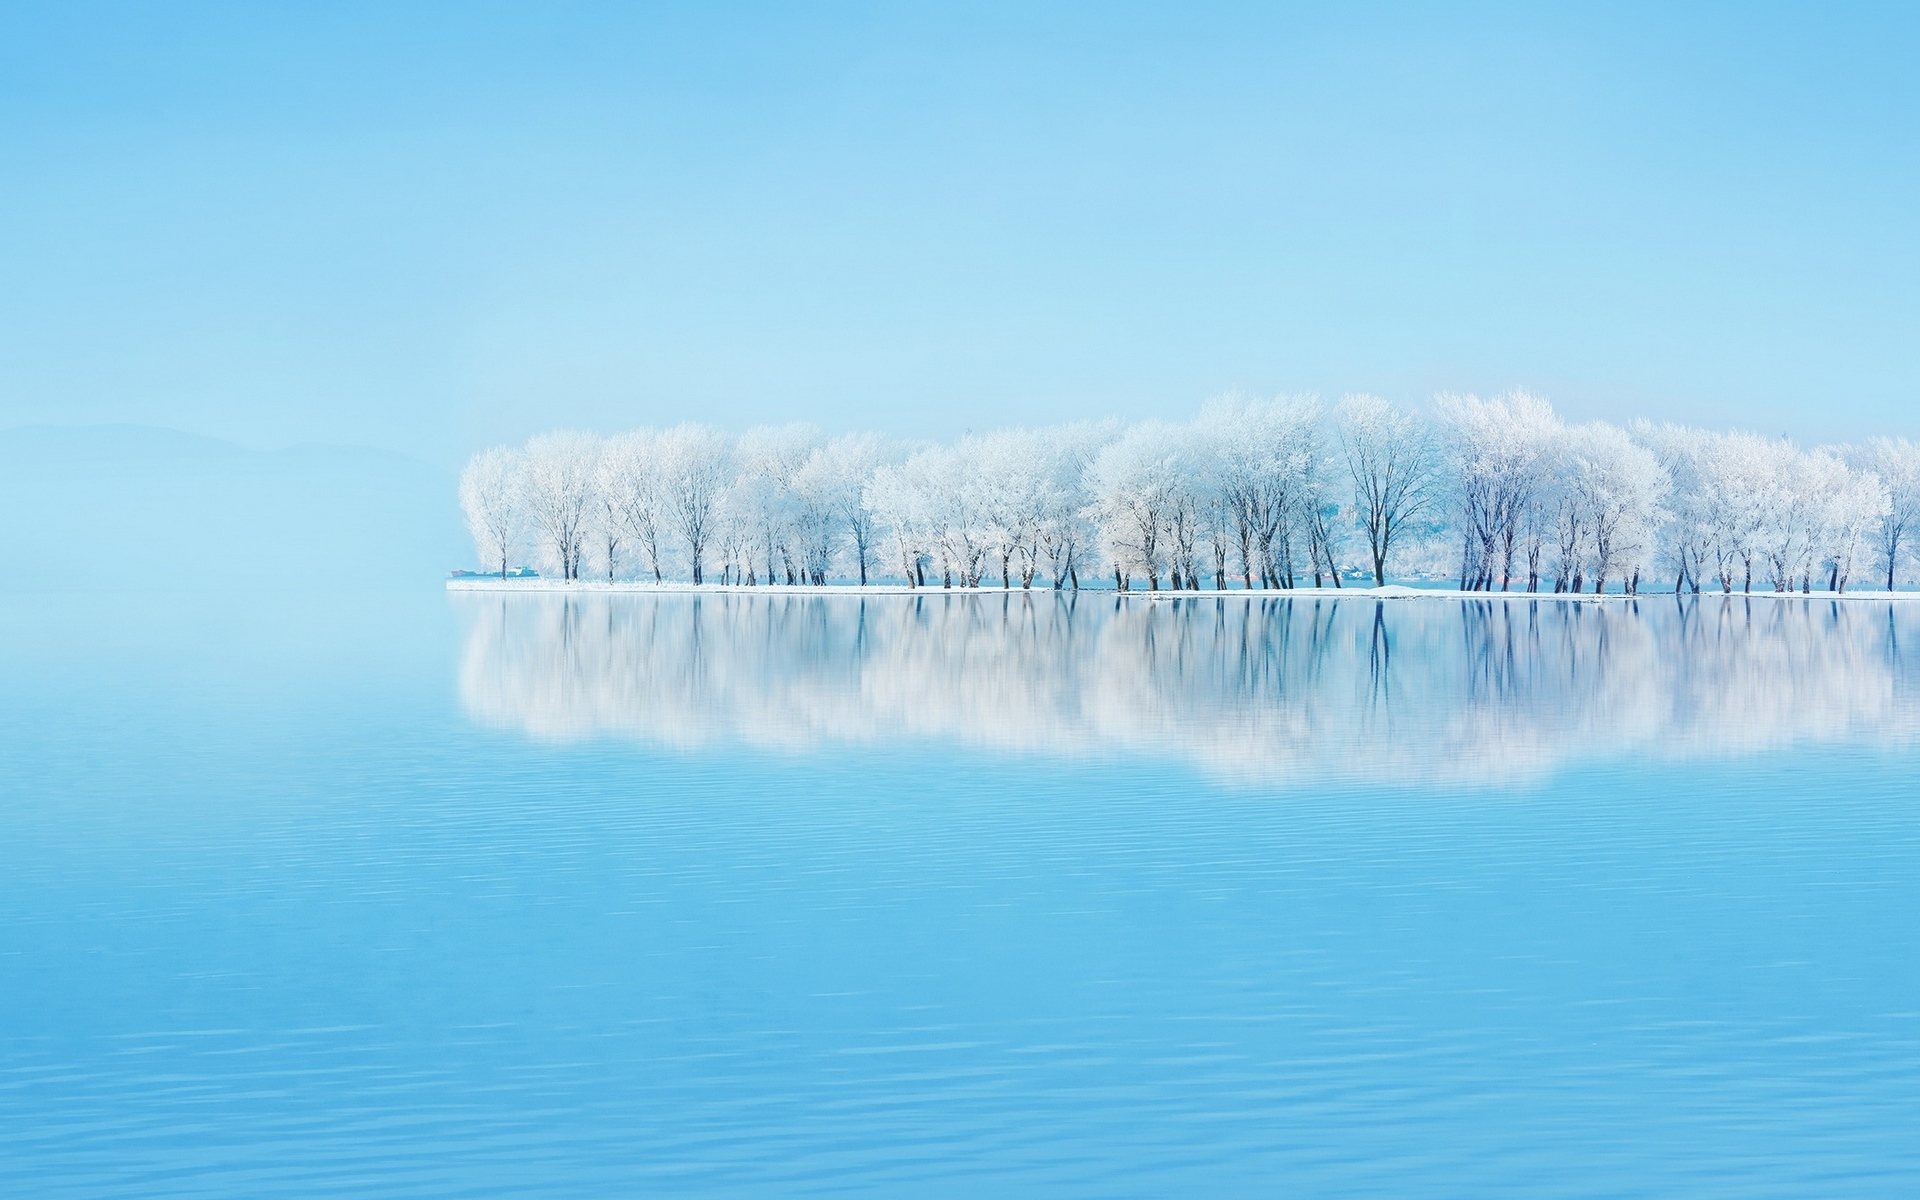 Остров с покрытыми снегом деревьями посреди озера